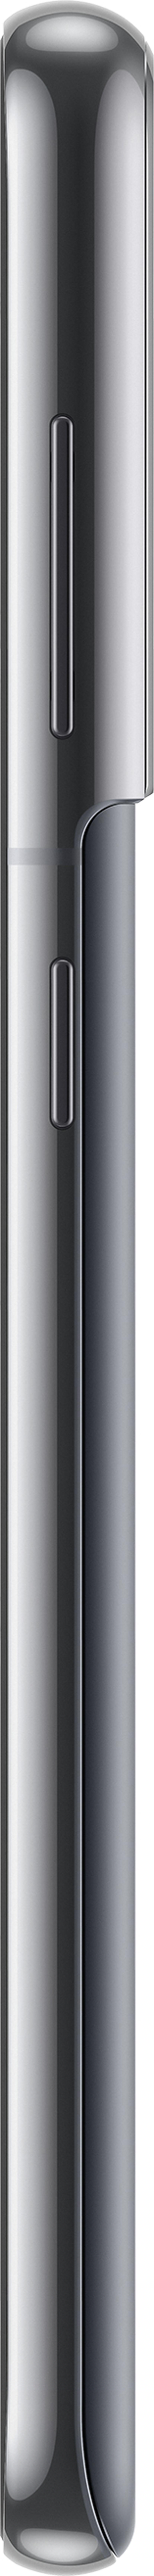 Samsung Galaxy S21 5G Enterprise Edition 128GB Dobbelt-SIM Fantomgrå